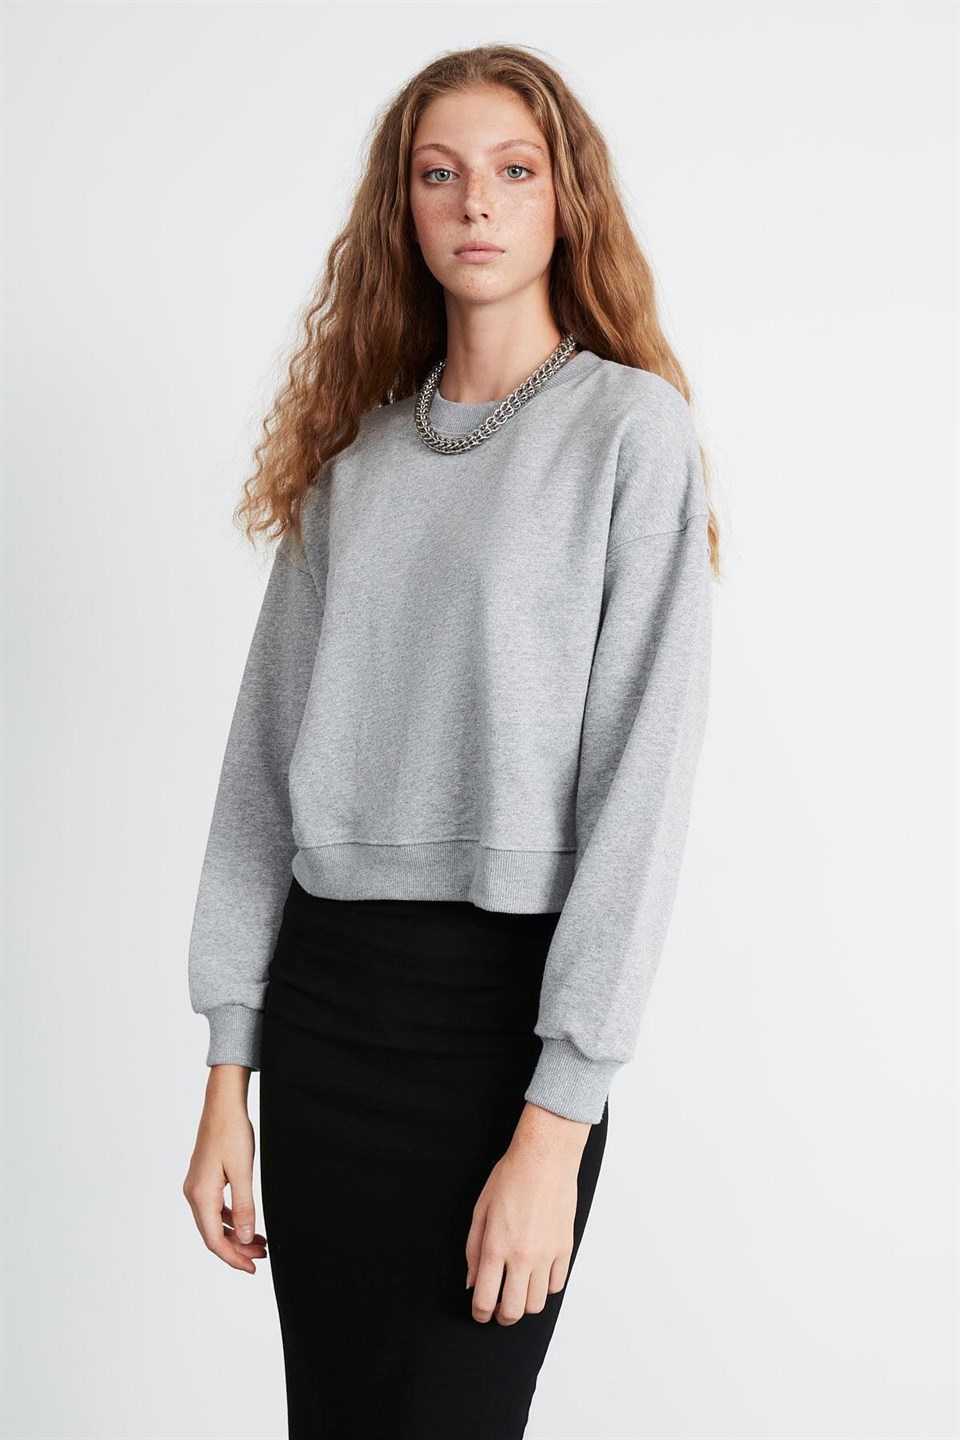 ELIZABETH Kadın Grimelanj Düz Renk Yuvarlak Yaka Comfort Fit Sweatshirt